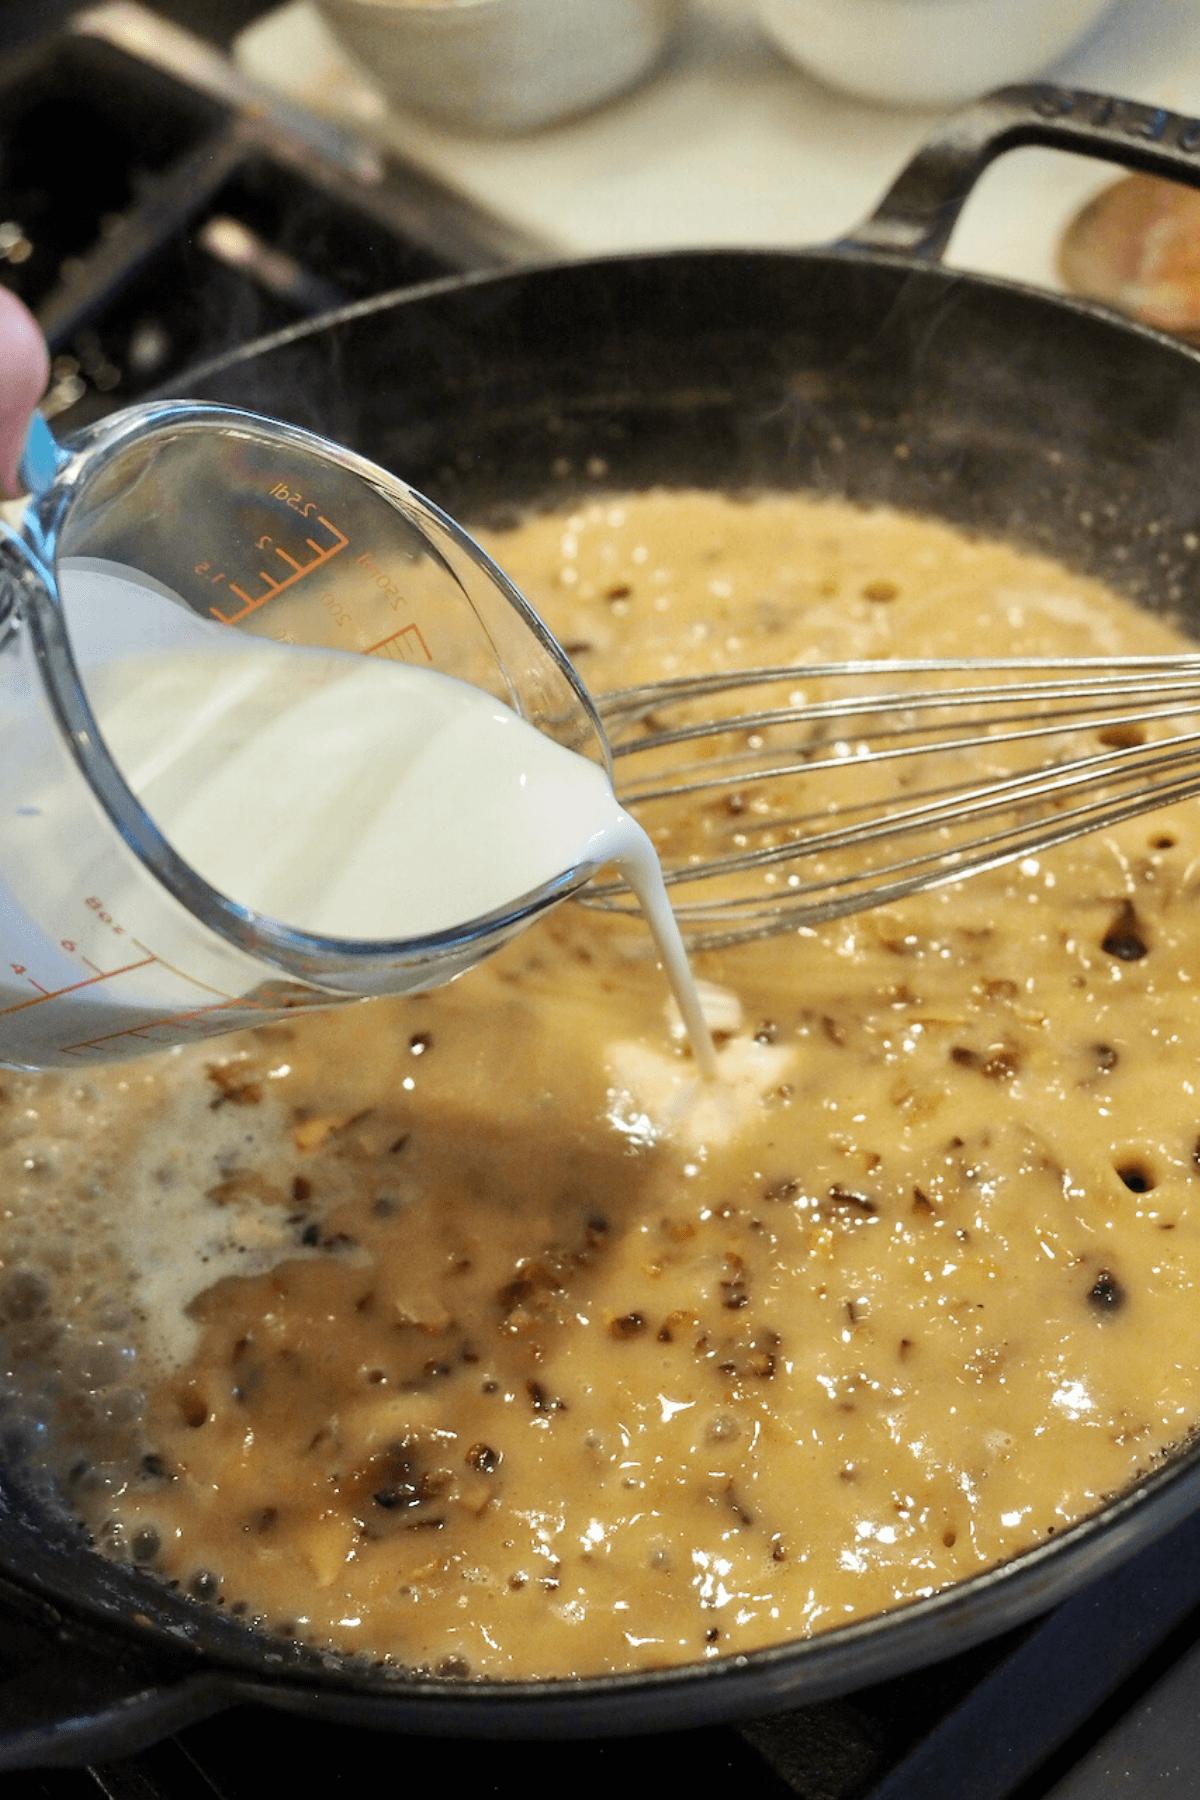 Adding cream to the flour roux mixture.